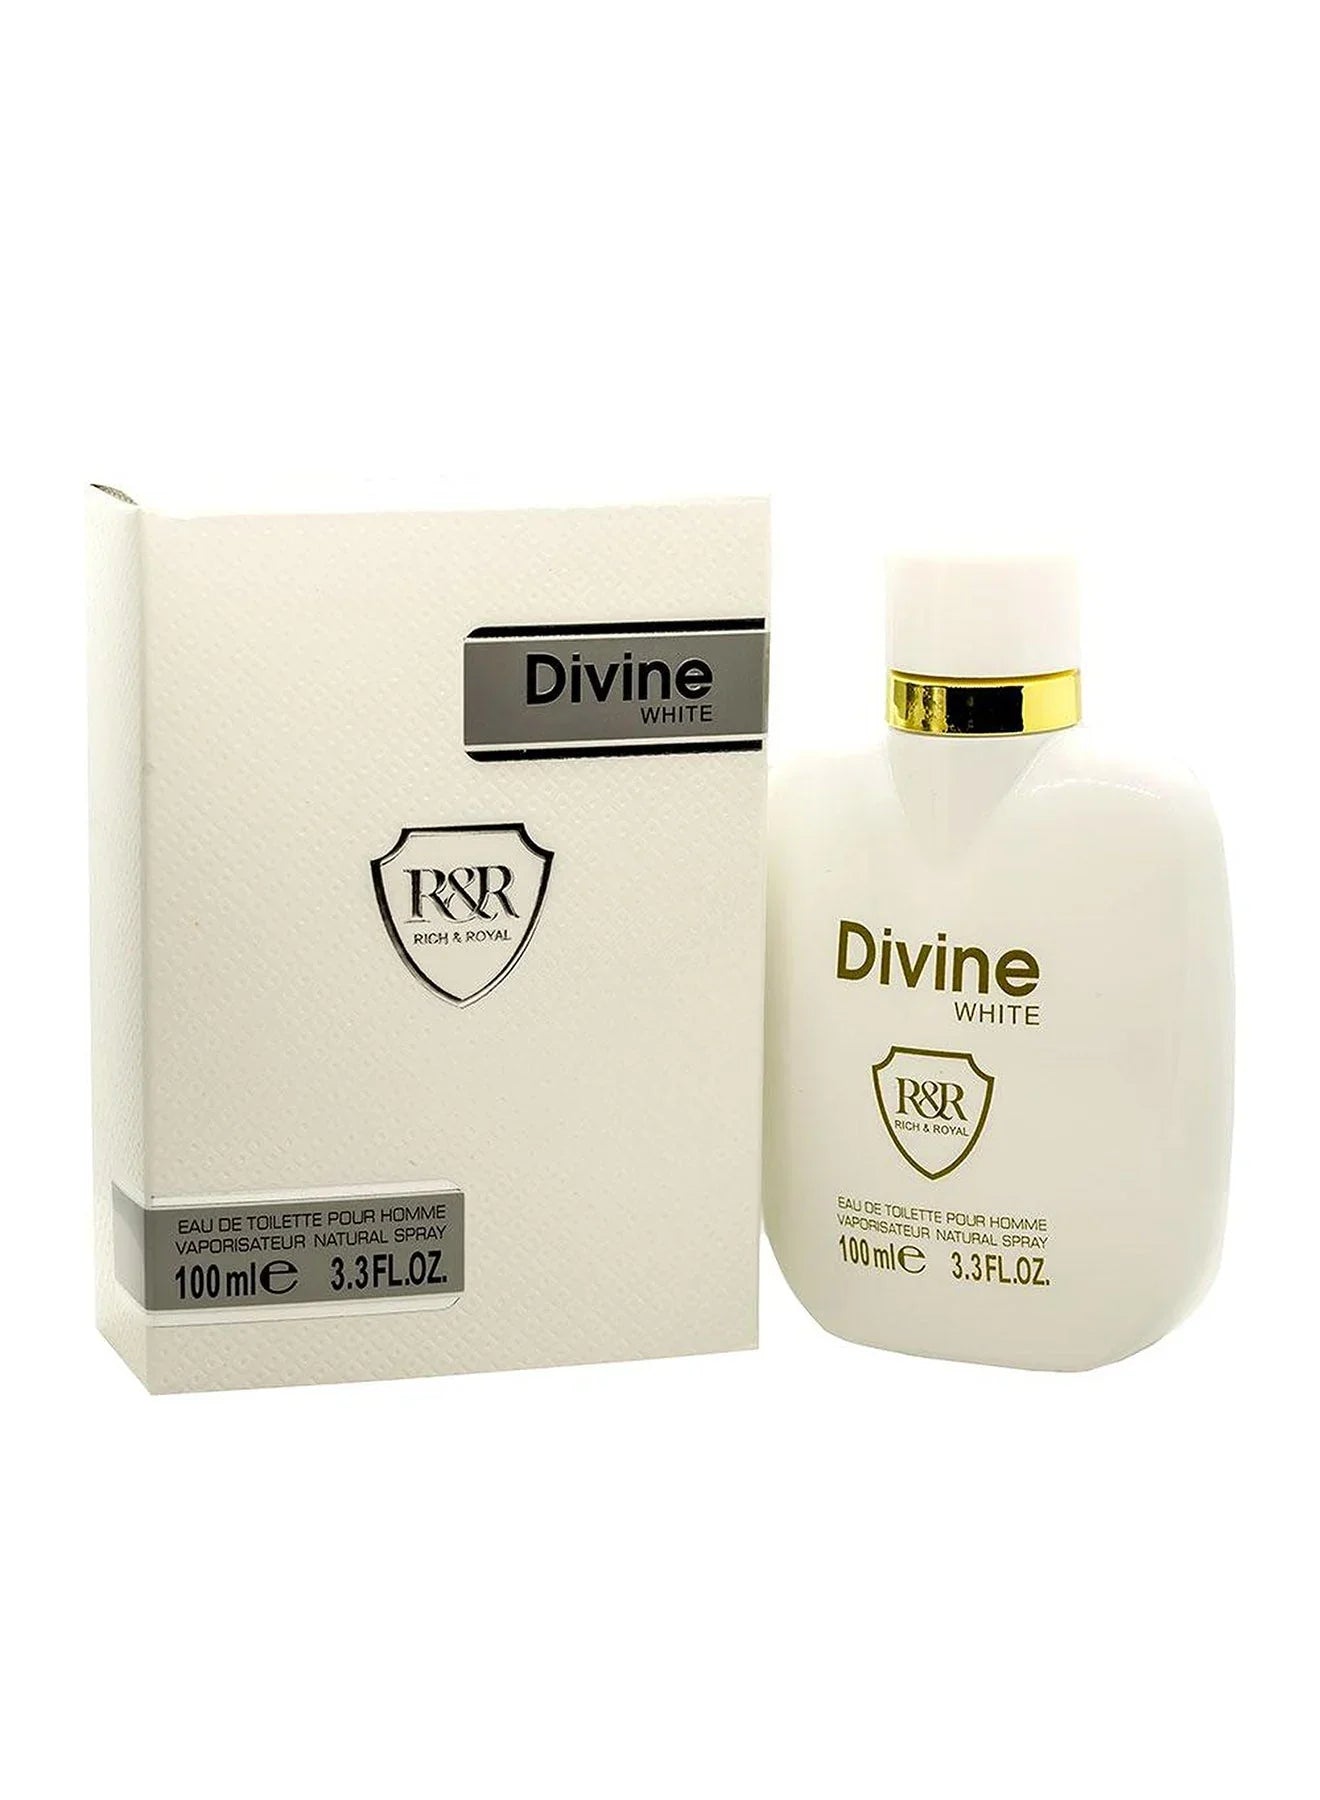 Divine White Eau De Toilette Pour Homme 100ml Value Pack of 3 